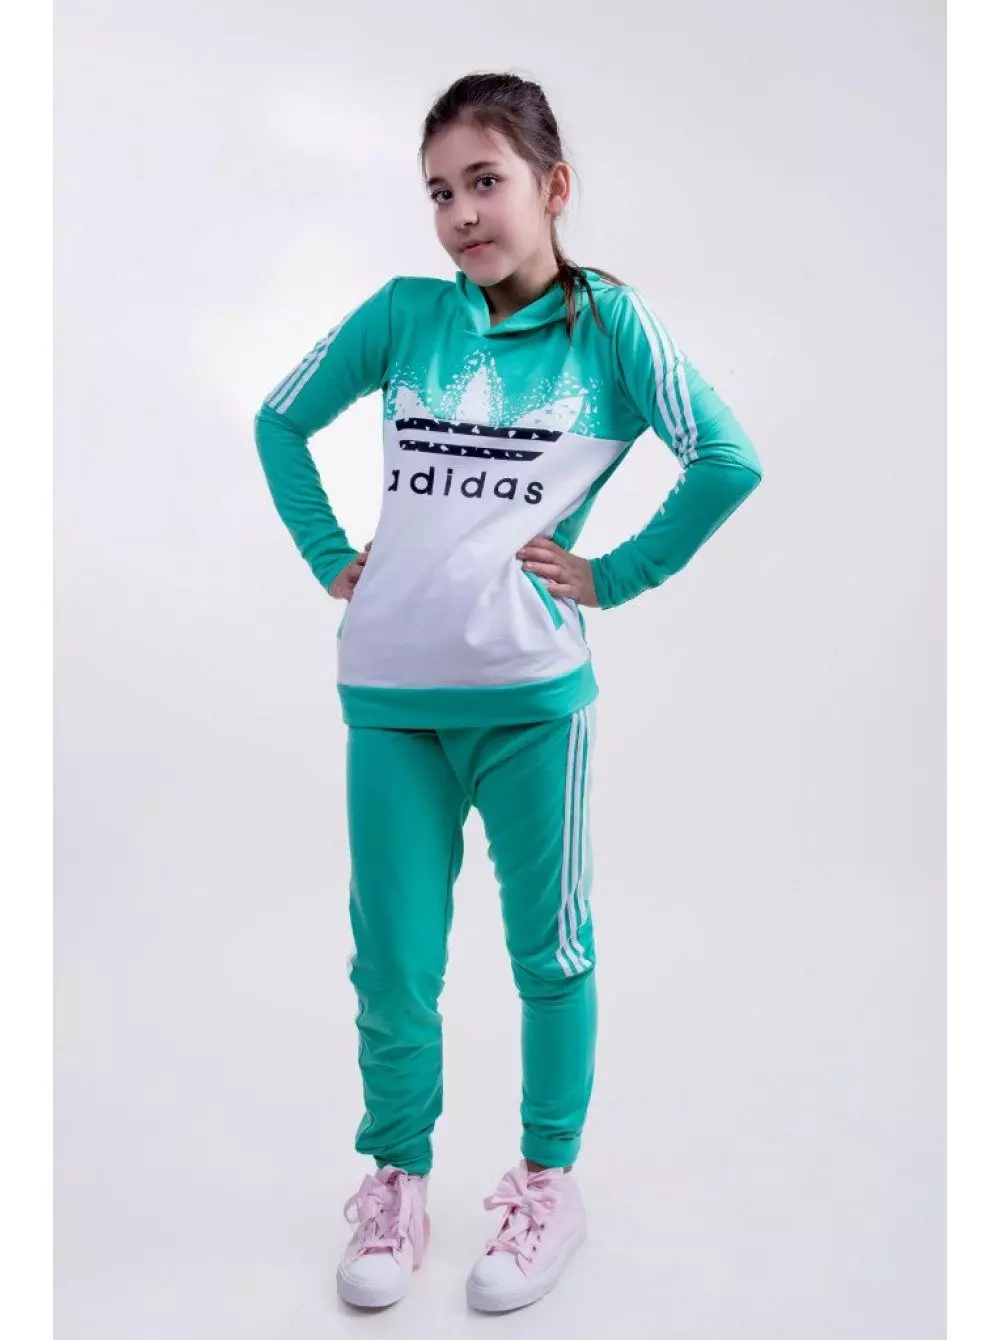 Adidas खेल सूट (100 फोटोहरू): महिला र बालबालिकाको खेल सूट, Adidas persche डिजाइन, प्रदर्शन र वास्तविक म्याड्रिड 1388_26